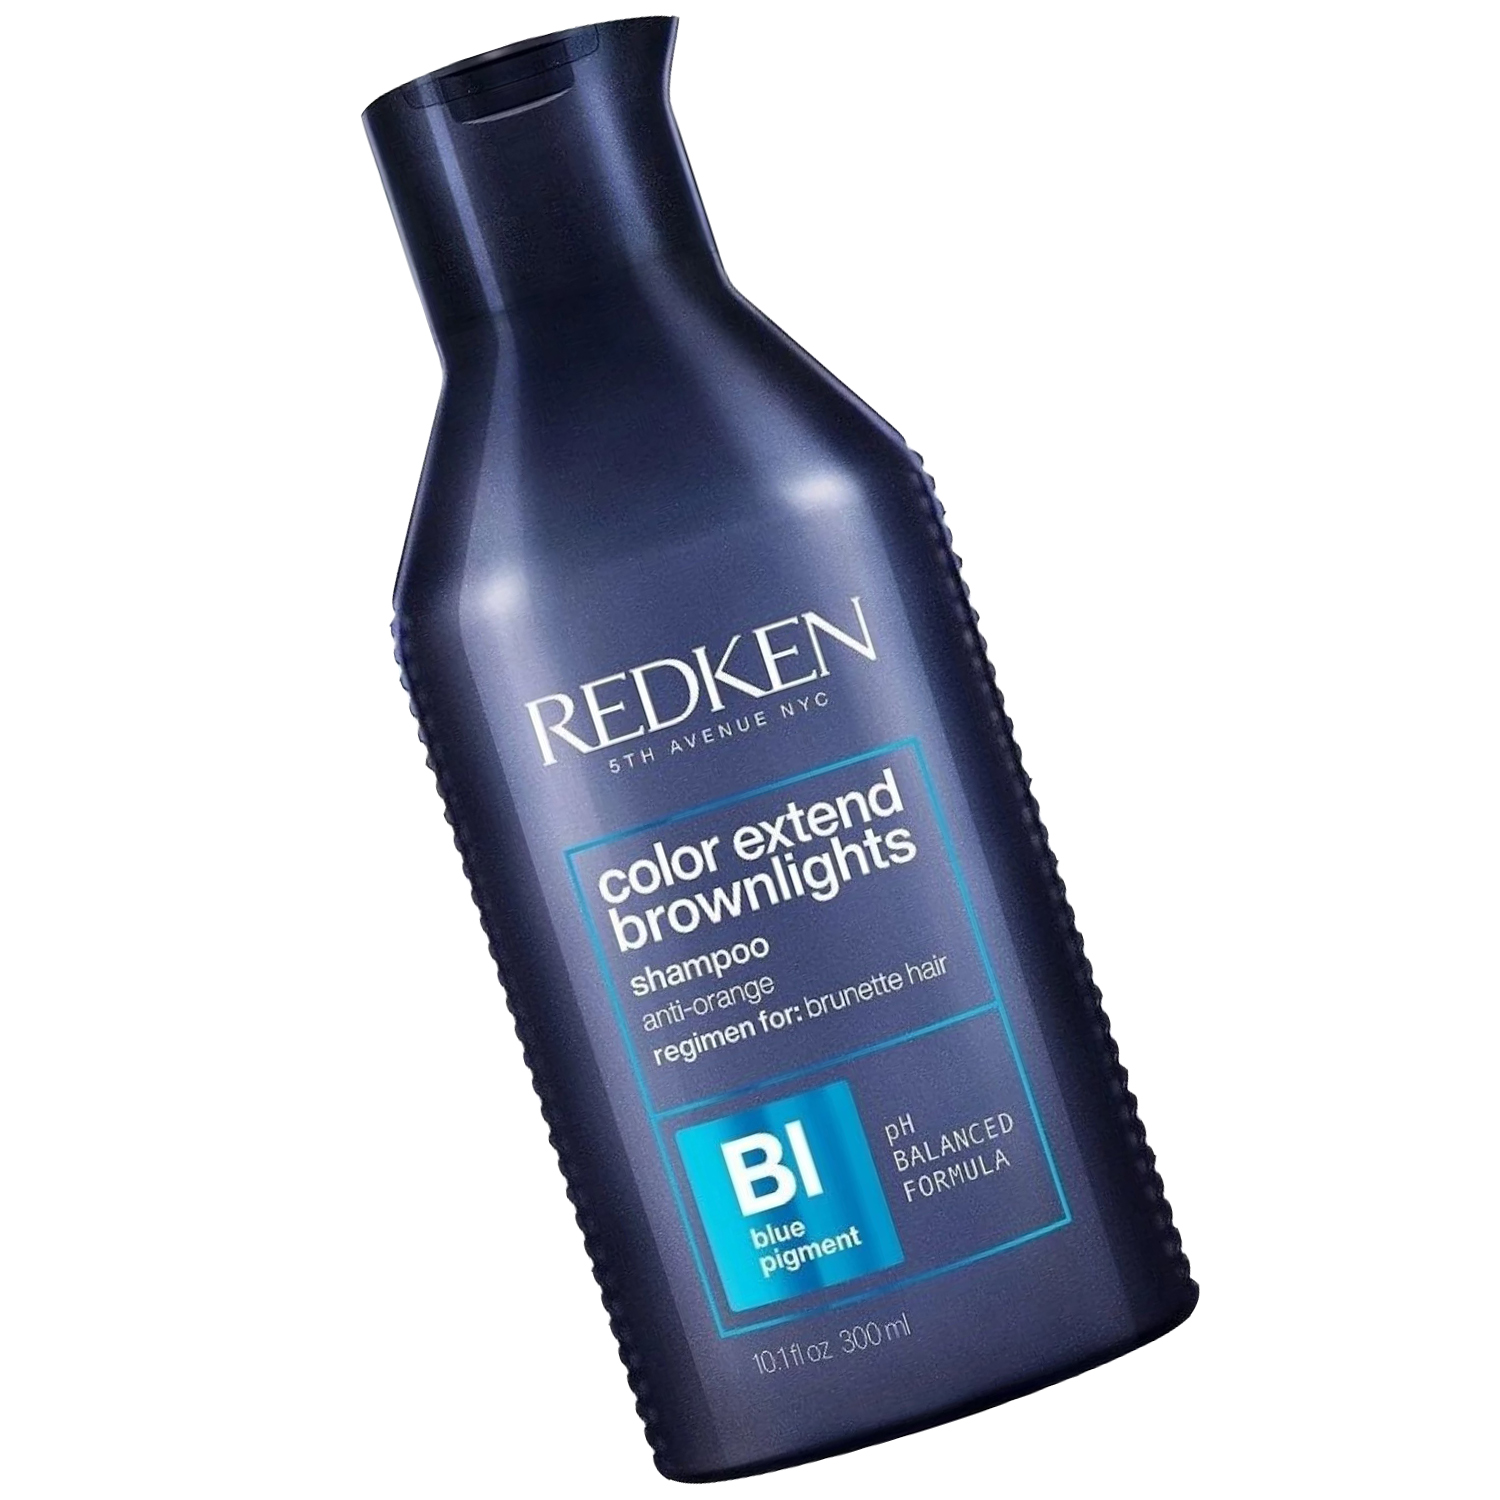 Redken Color Extend Brownlights Shampoo for Brunette Hair 10.1 oz - image 3 of 5